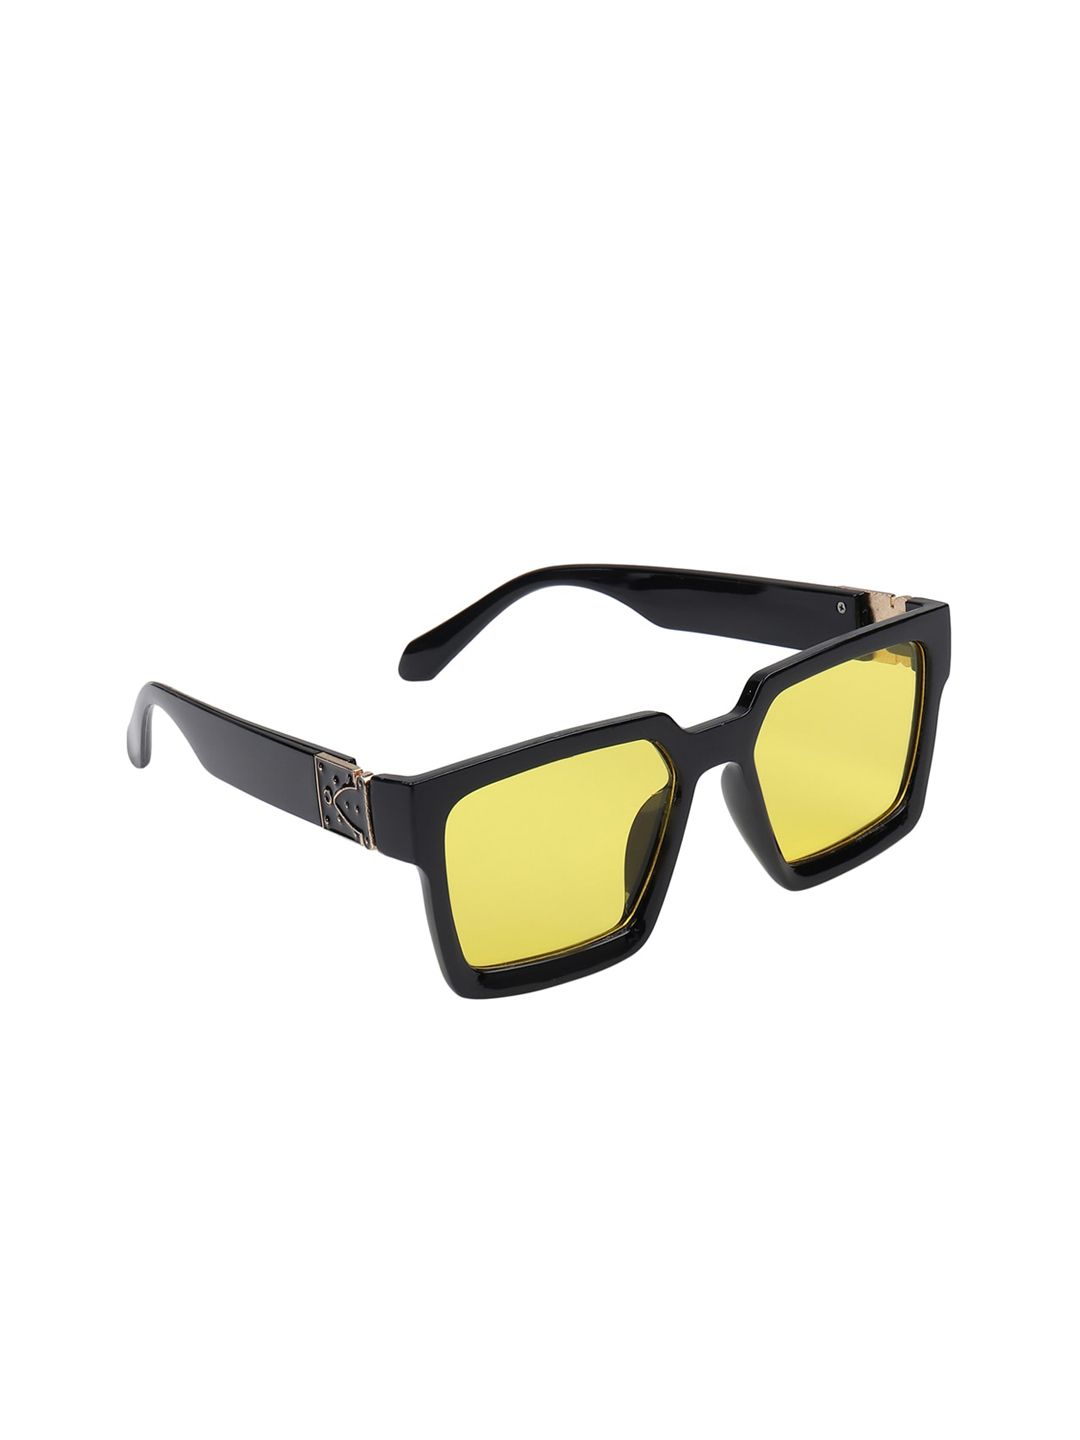 Swiss Design Unisex UV Protected Lens Square Sunglasses SDSG Price in India